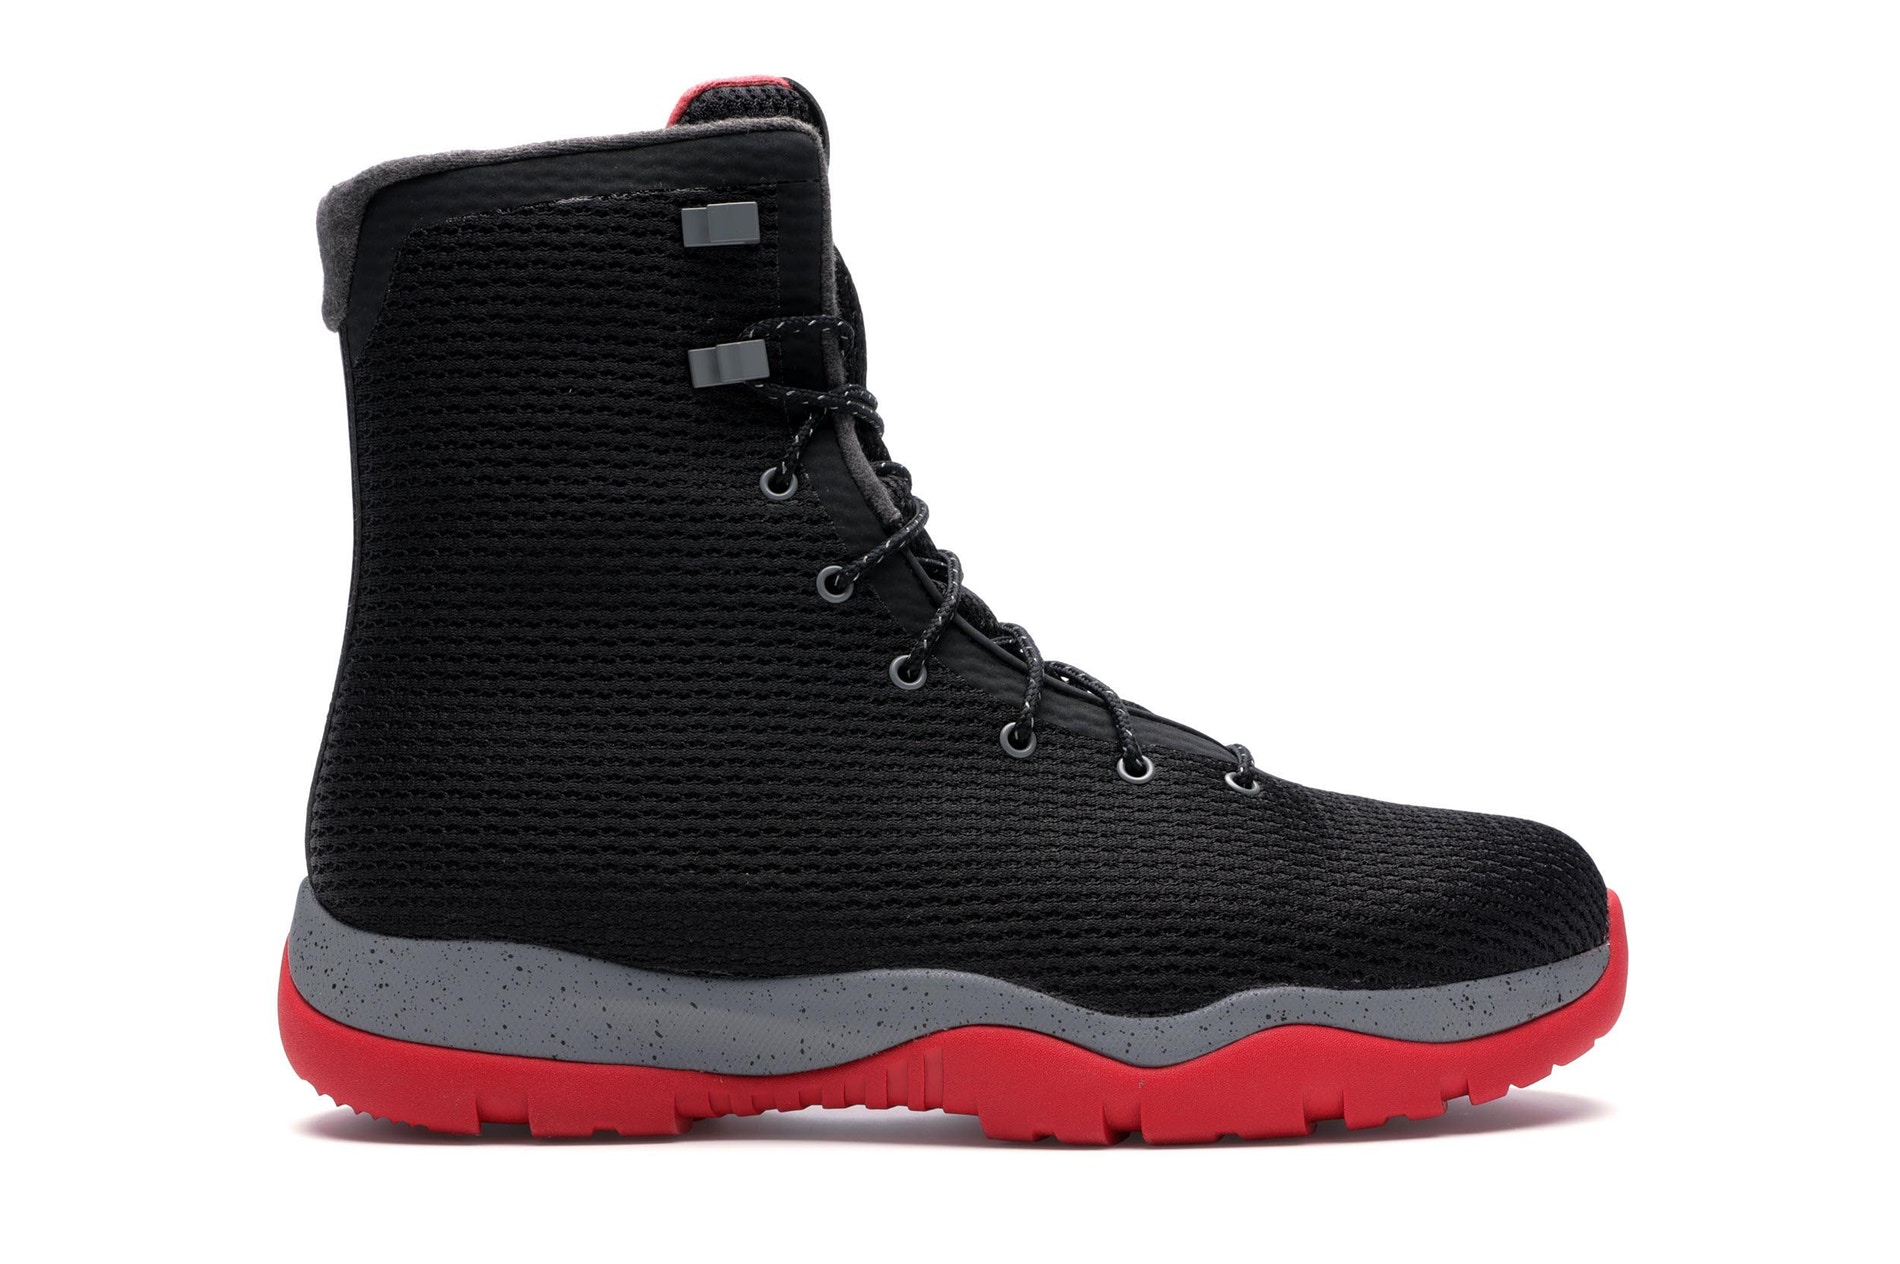 Jordan Future Boot Black Grey Red Men's - 854554-001 - US